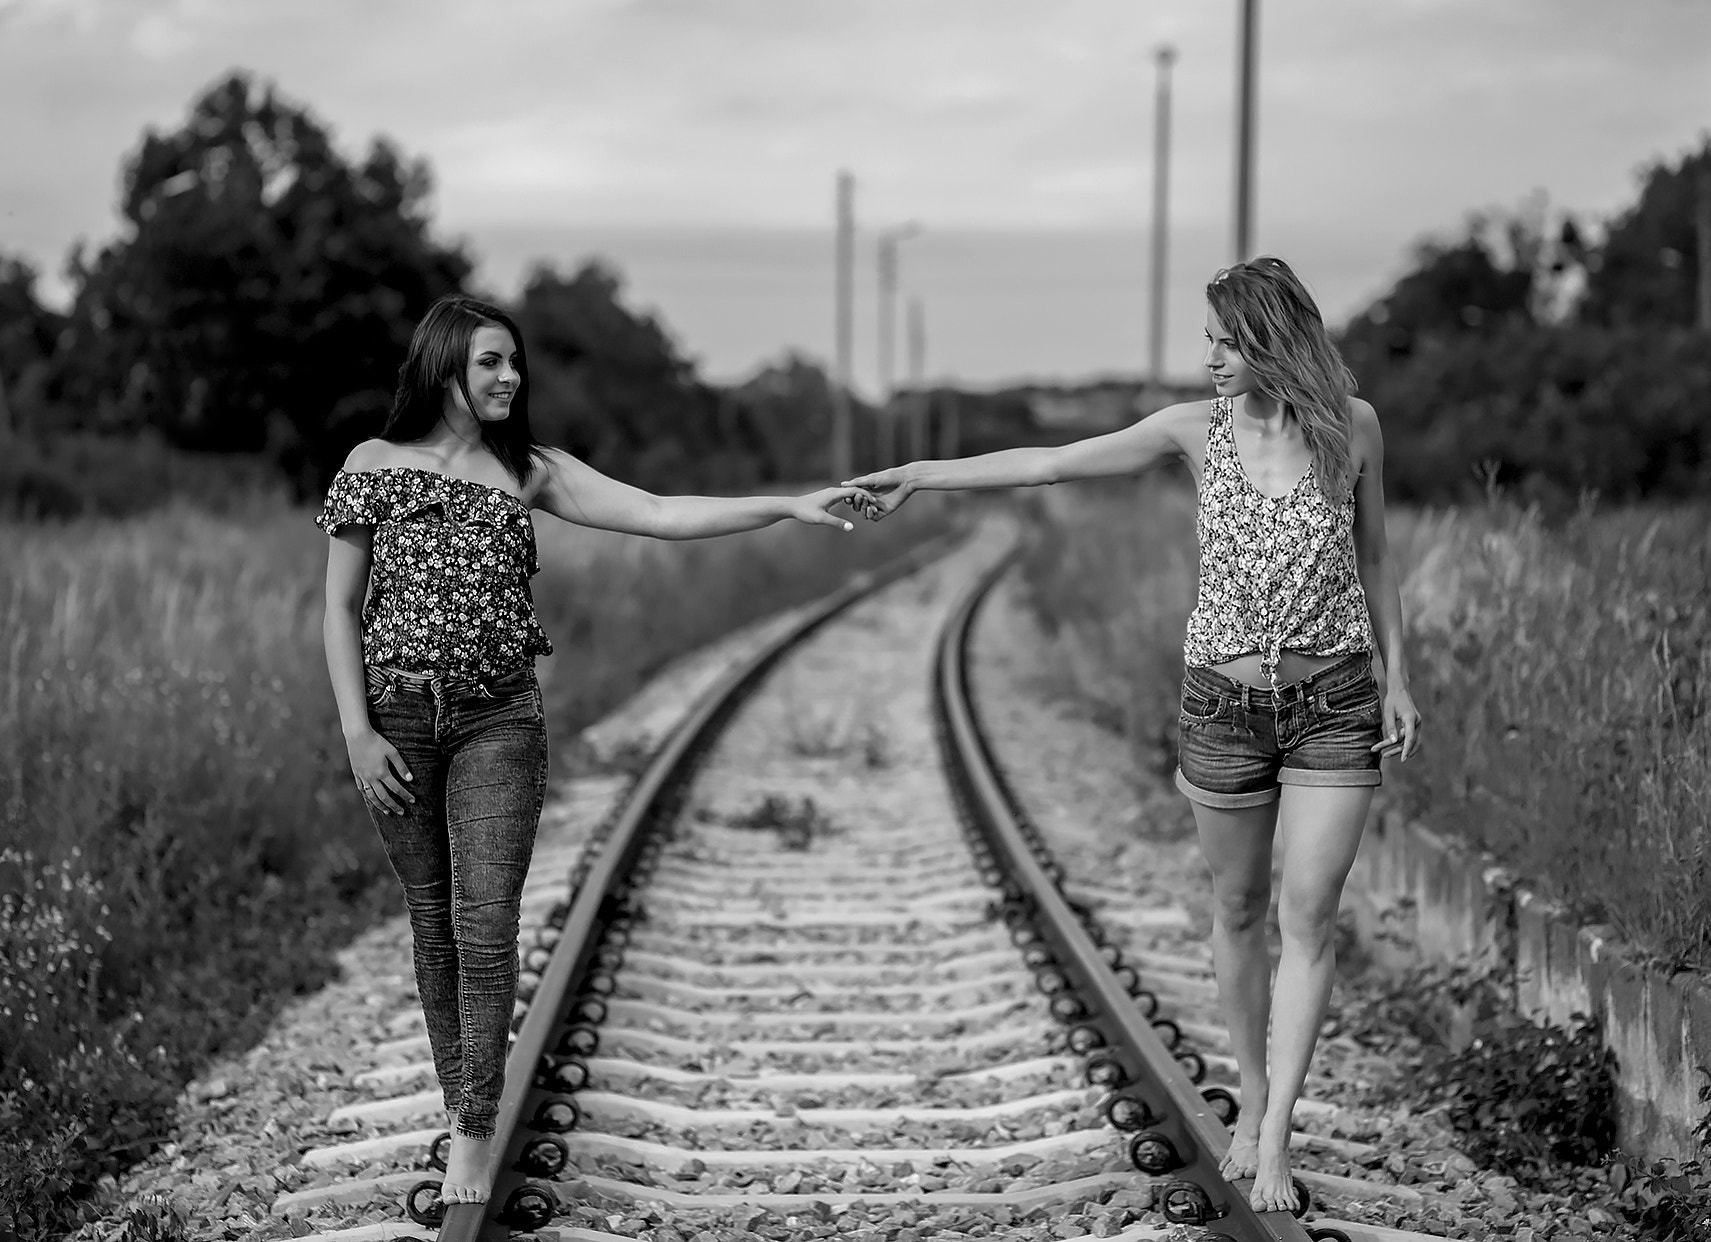 Holding Hands Railway Monochrome Women Women Outdoors 500px W Odzimierz Szyma Ski Two Women Barefoot 1711x1242